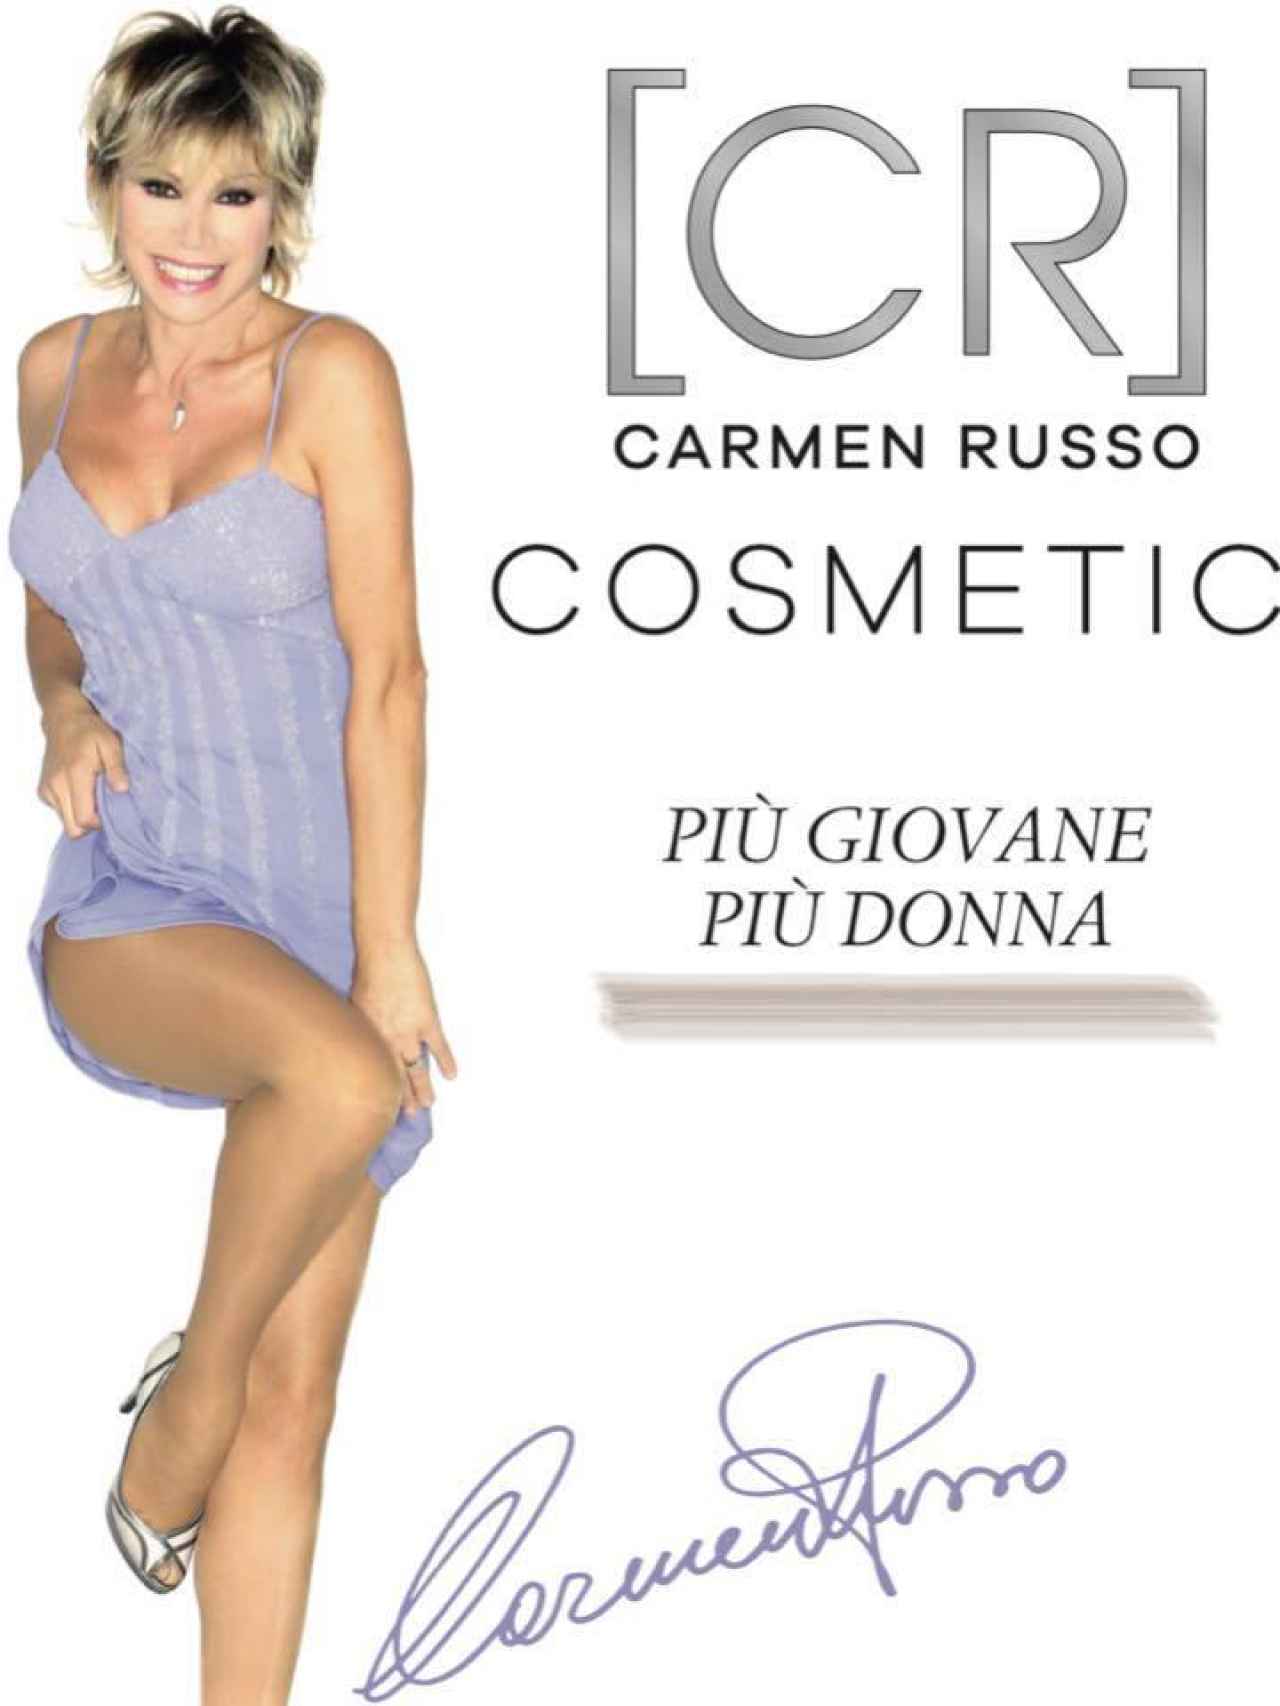 Imagen promocional de su marca de cosmética.